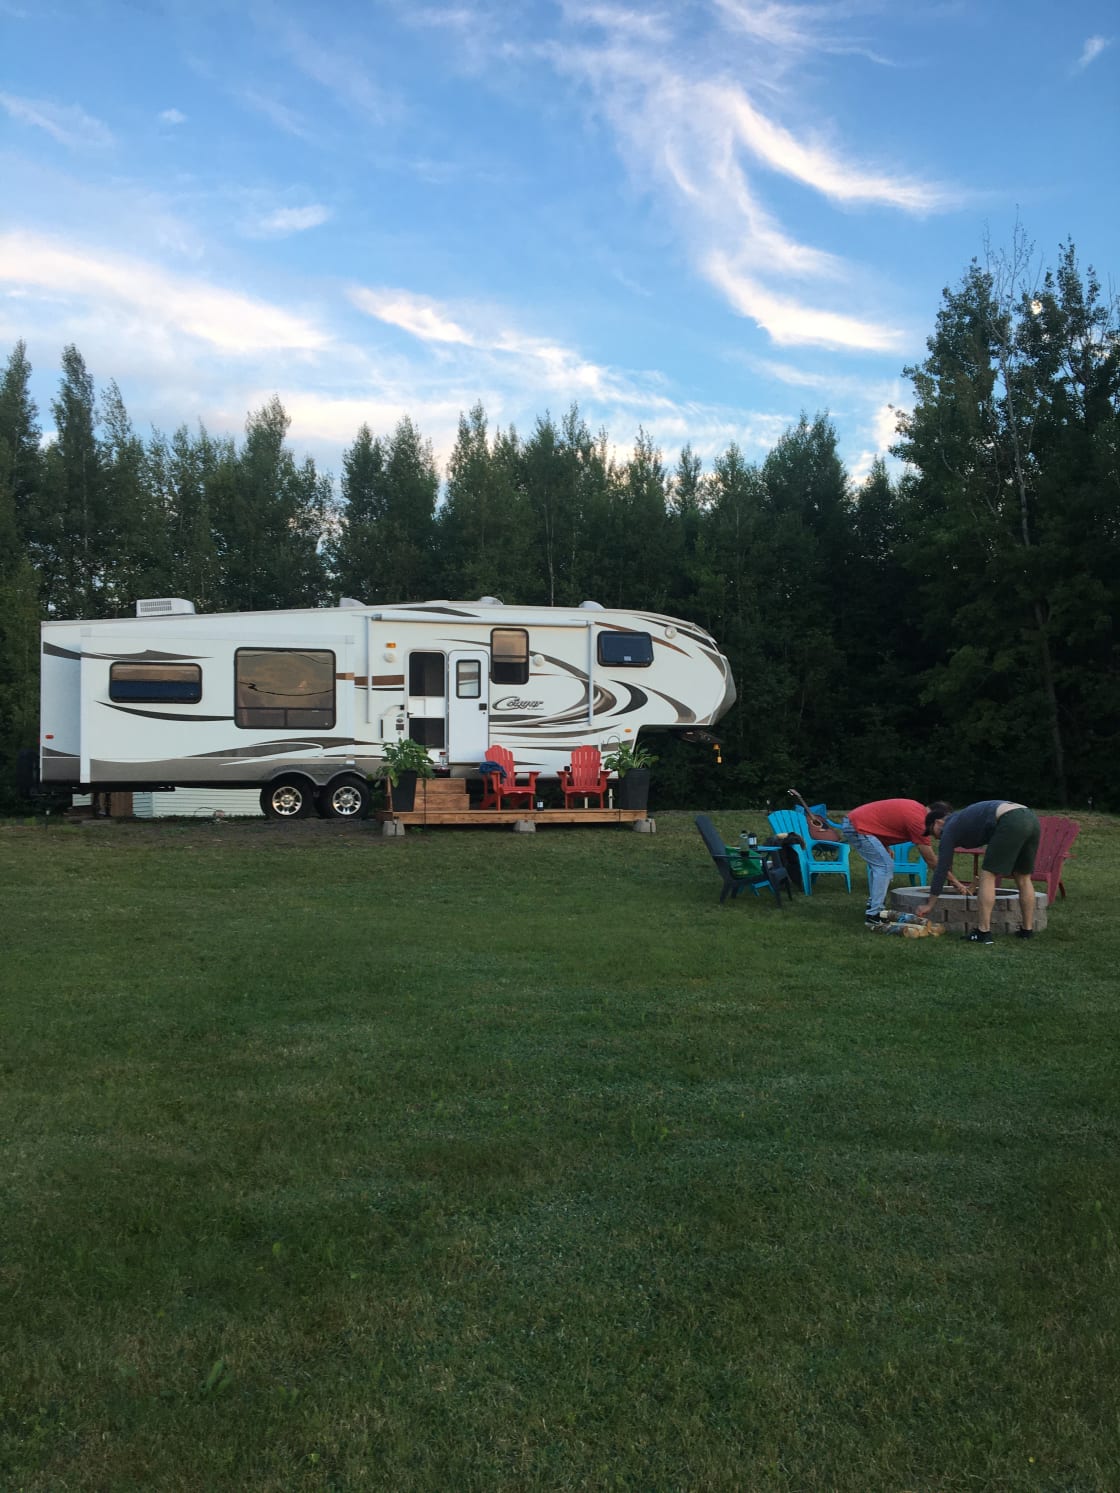 The Mac's Camp